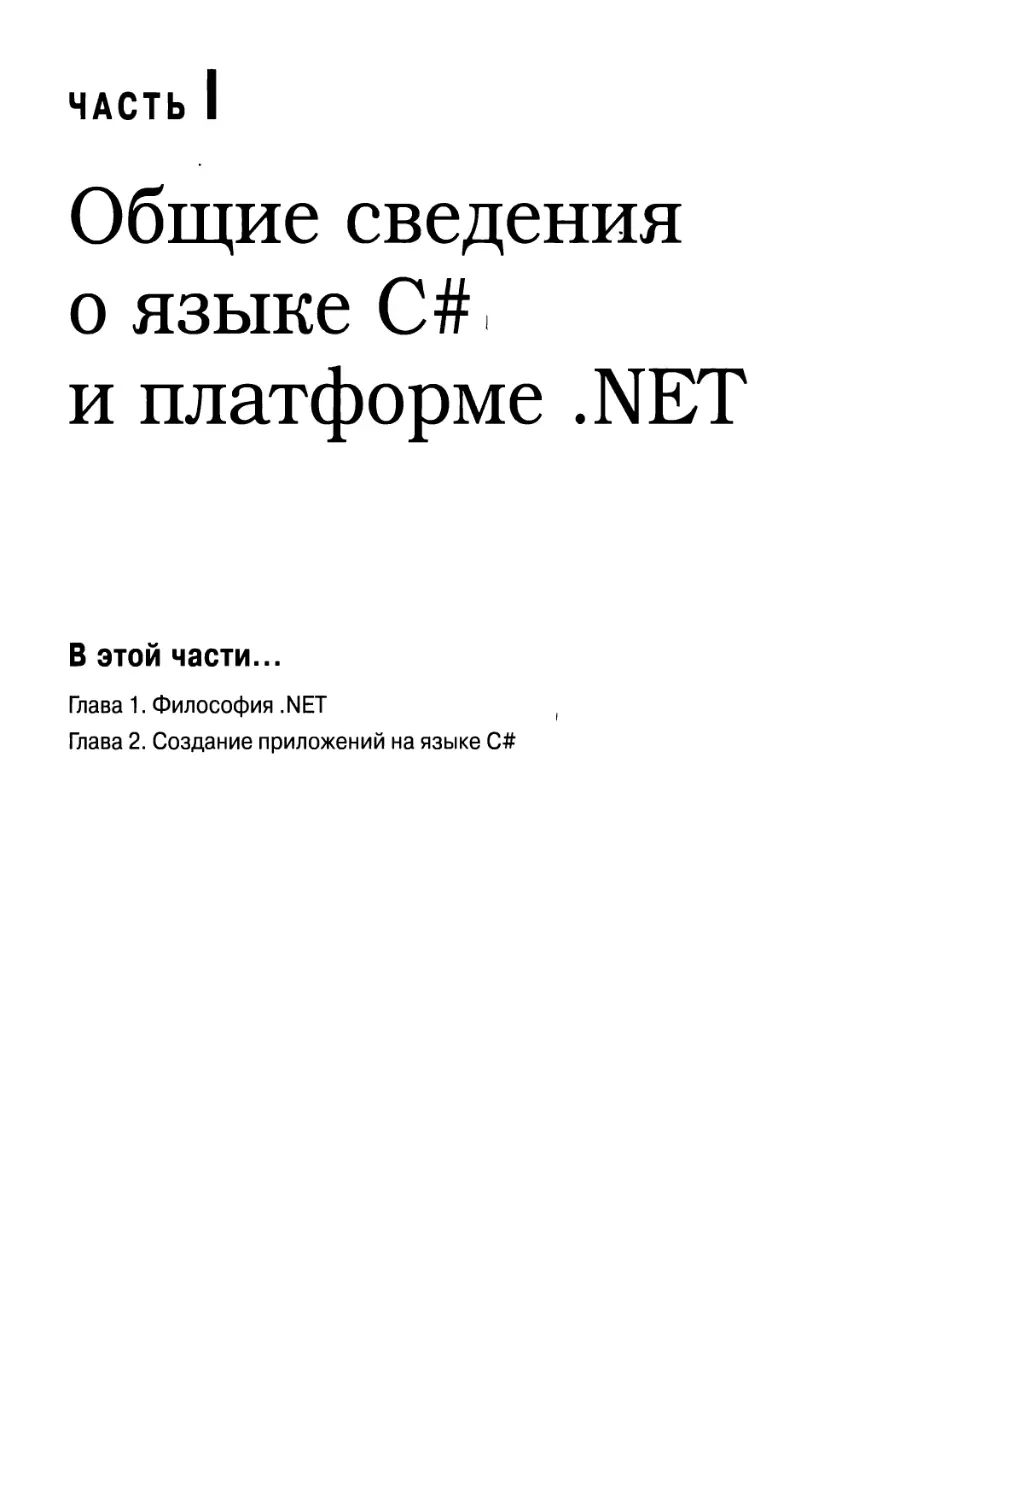 Часть I. Общие сведения о языке С# и платформе .NET